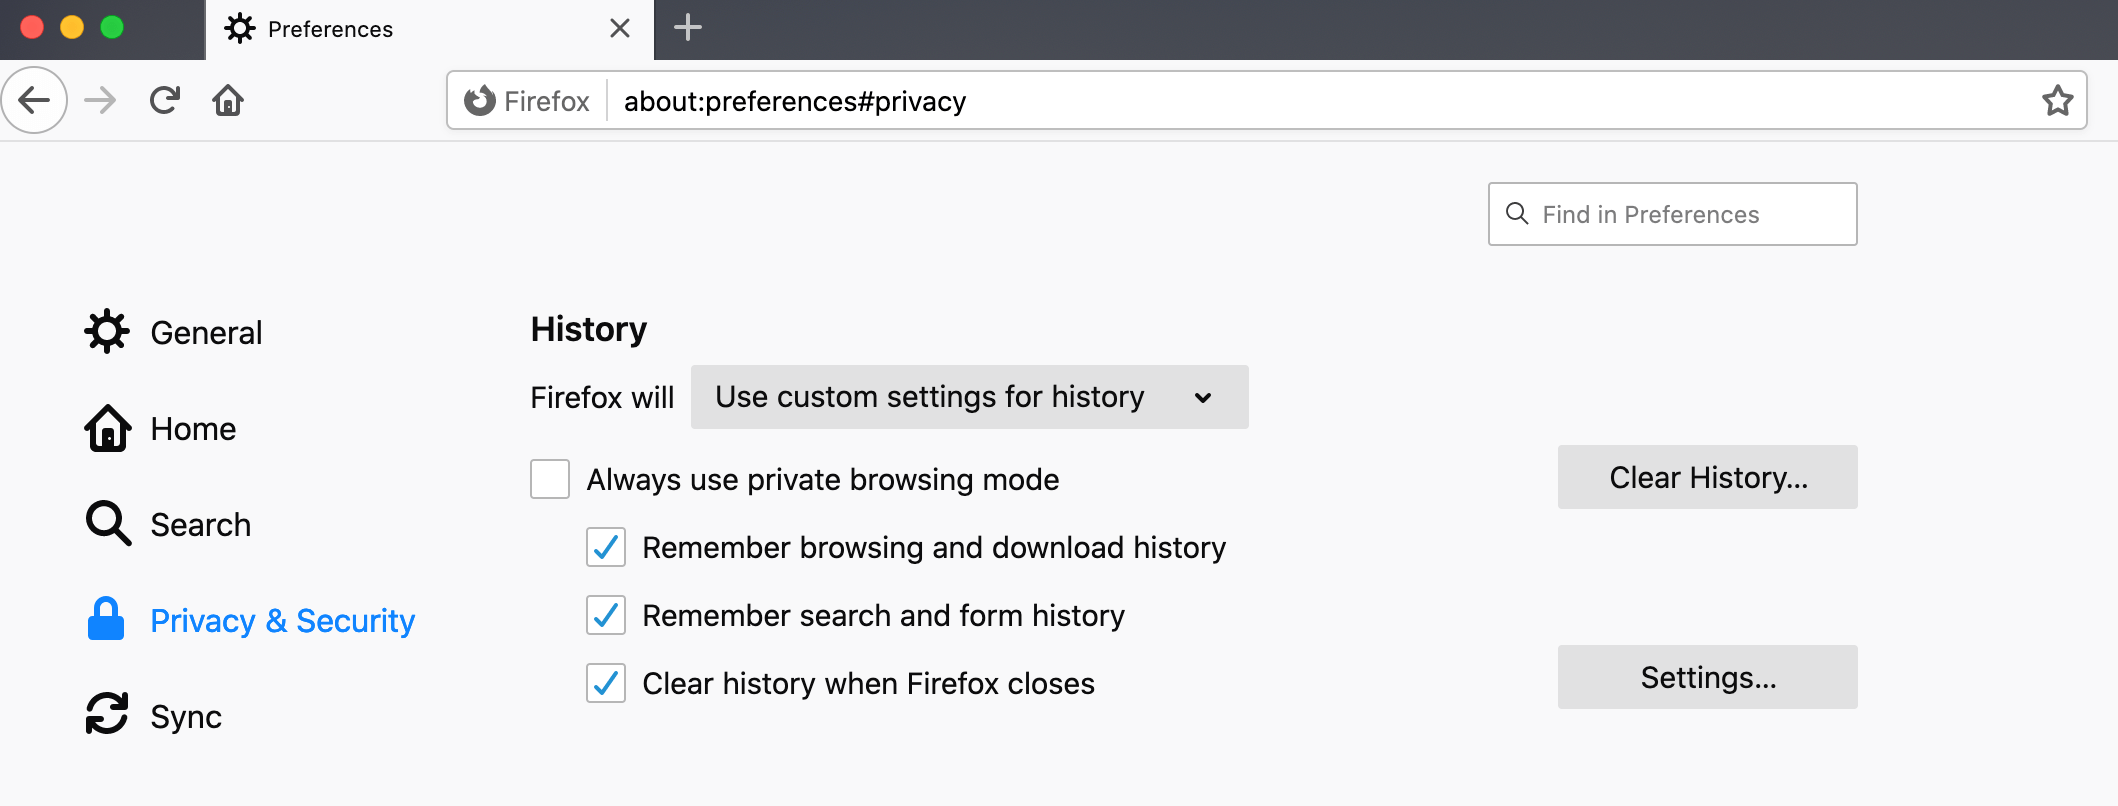 Rensa din webbhistorik automatiskt när Mozilla Firefox stängs. 